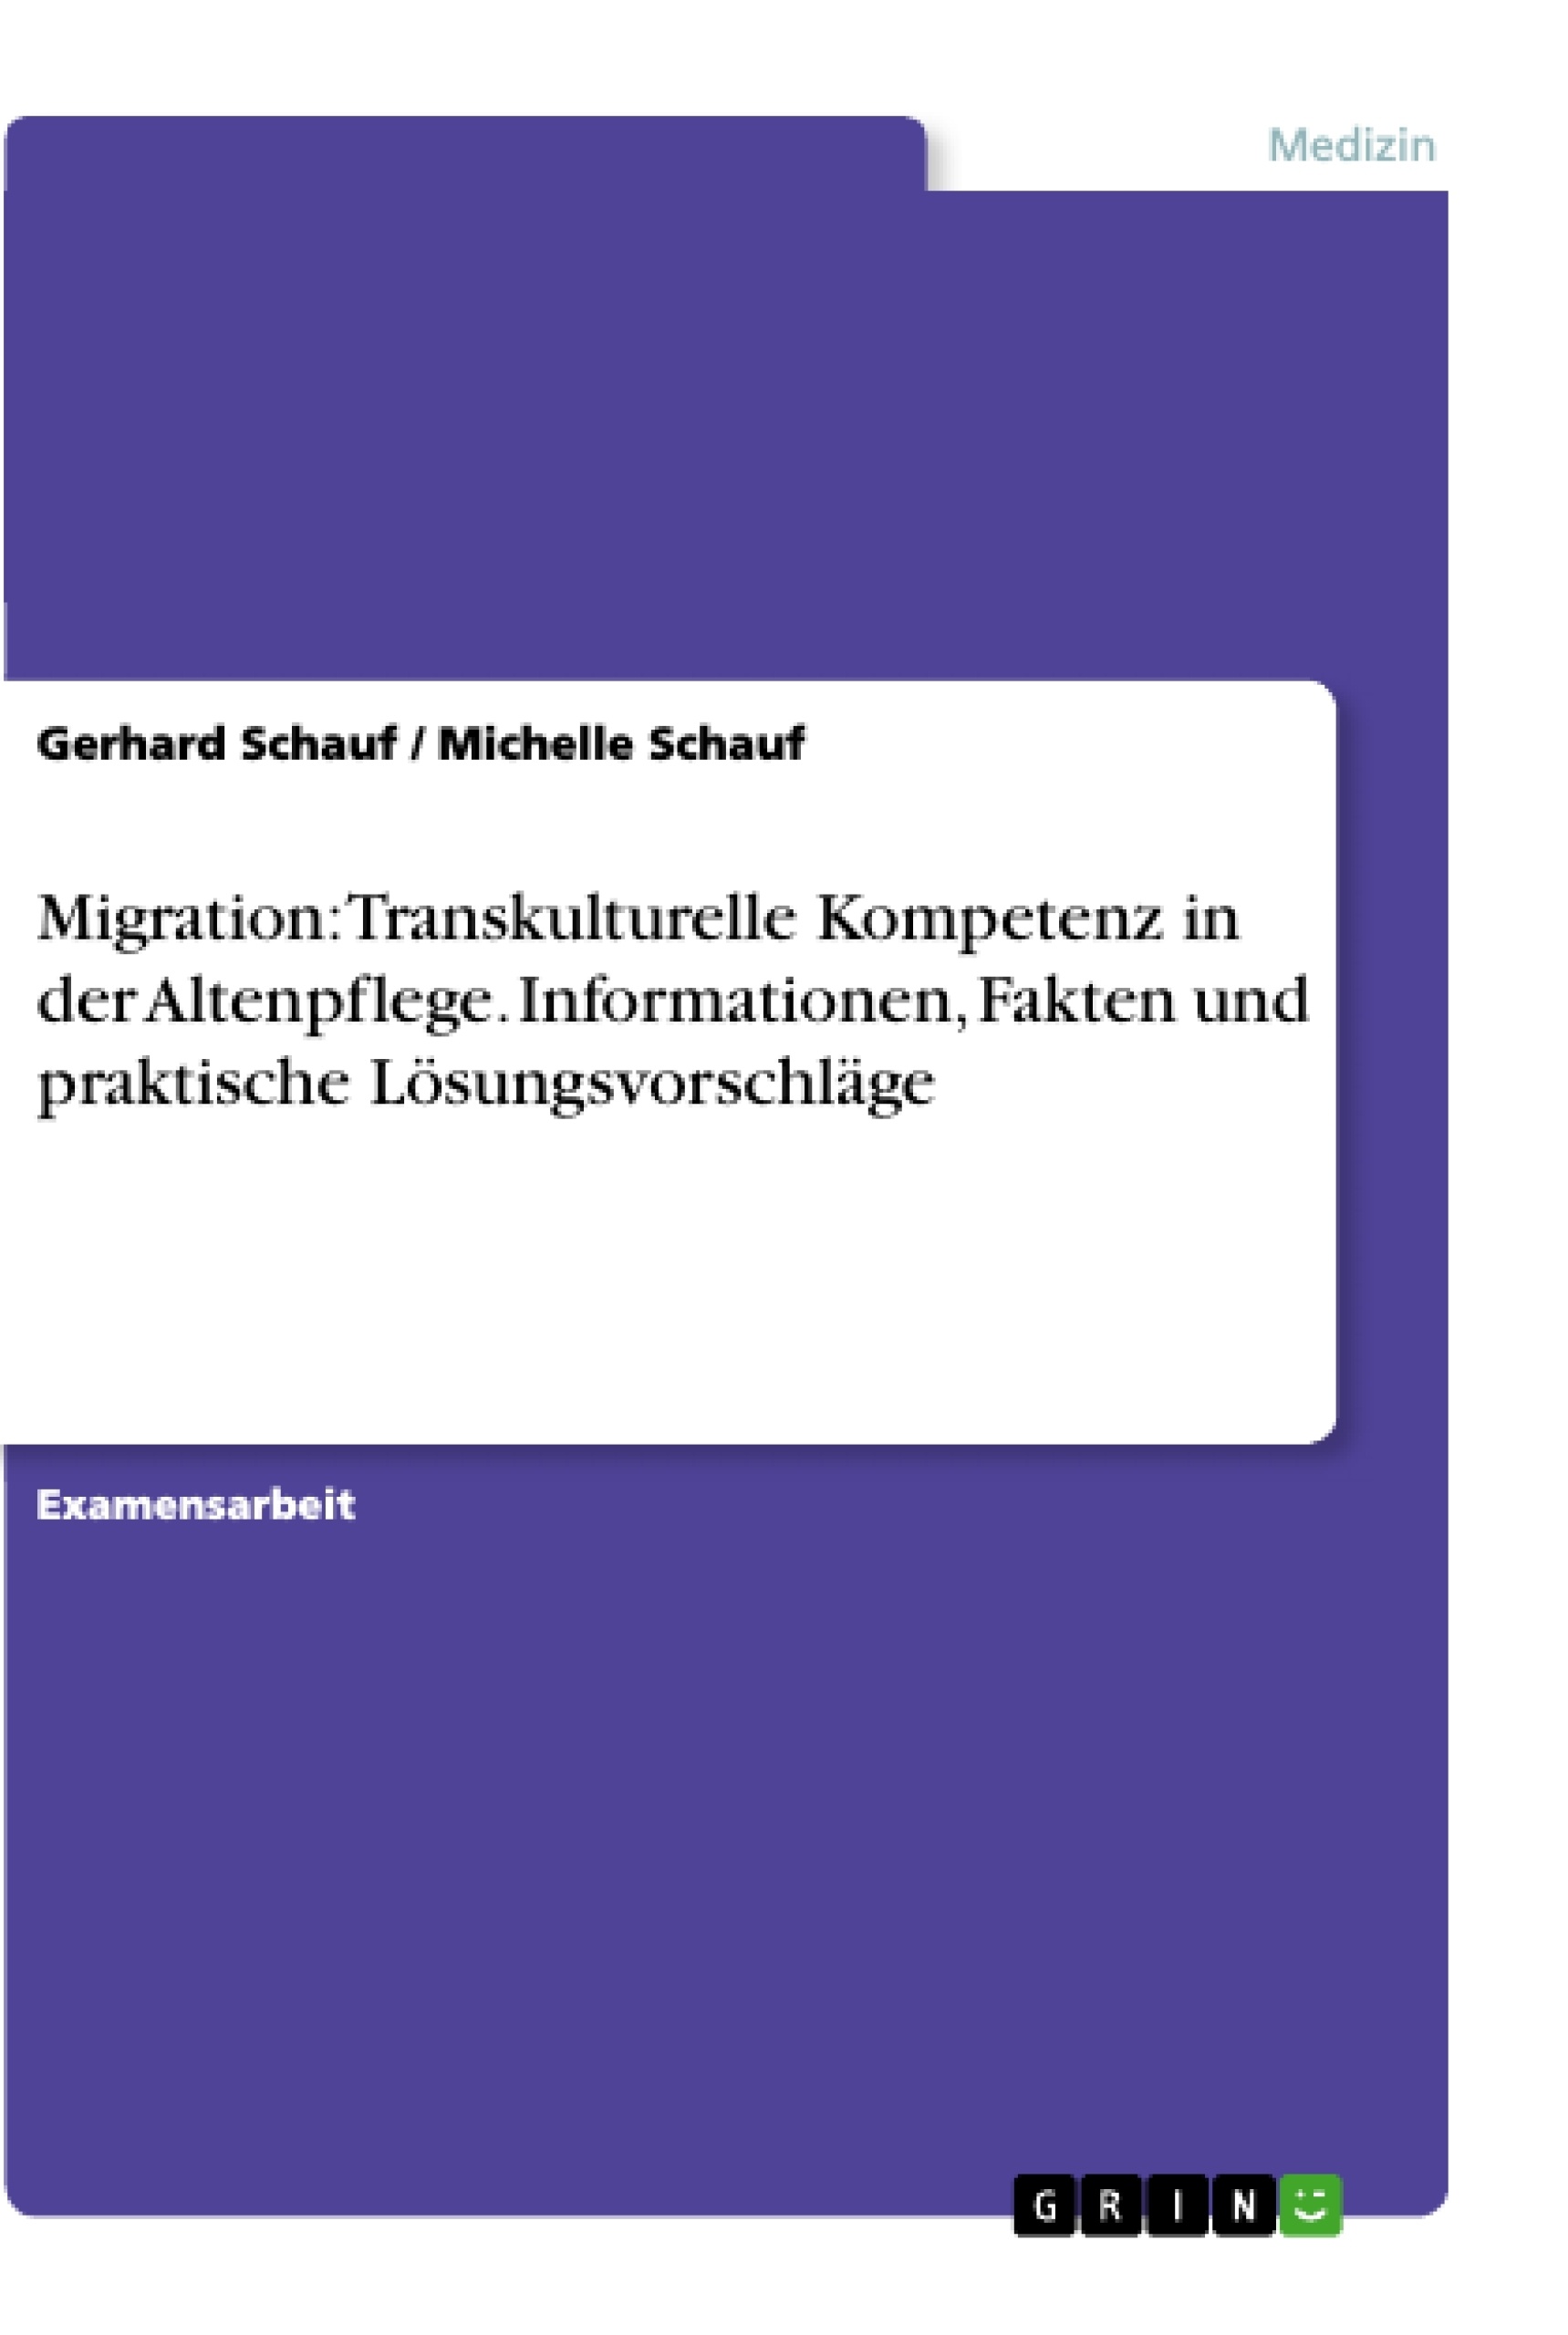 Title: Migration: Transkulturelle Kompetenz in der Altenpflege. Informationen, Fakten und praktische Lösungsvorschläge